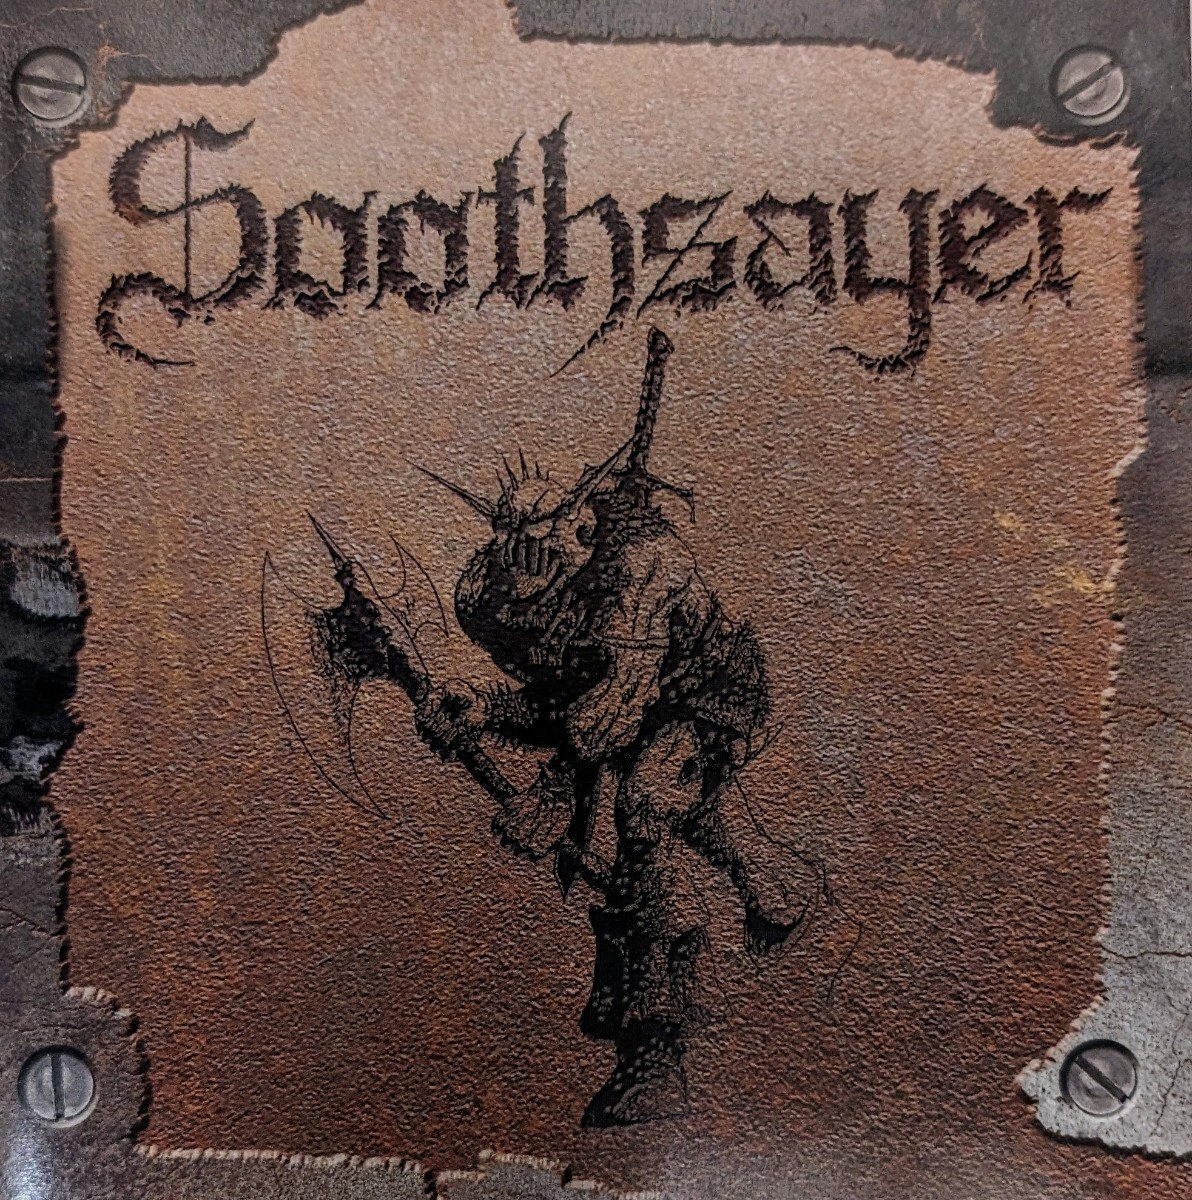 SOOTHSAYER Canada Thrash Heavy Metal スラッシュメタル ヘヴィメタル 輸入盤CD コンピレーションの画像1